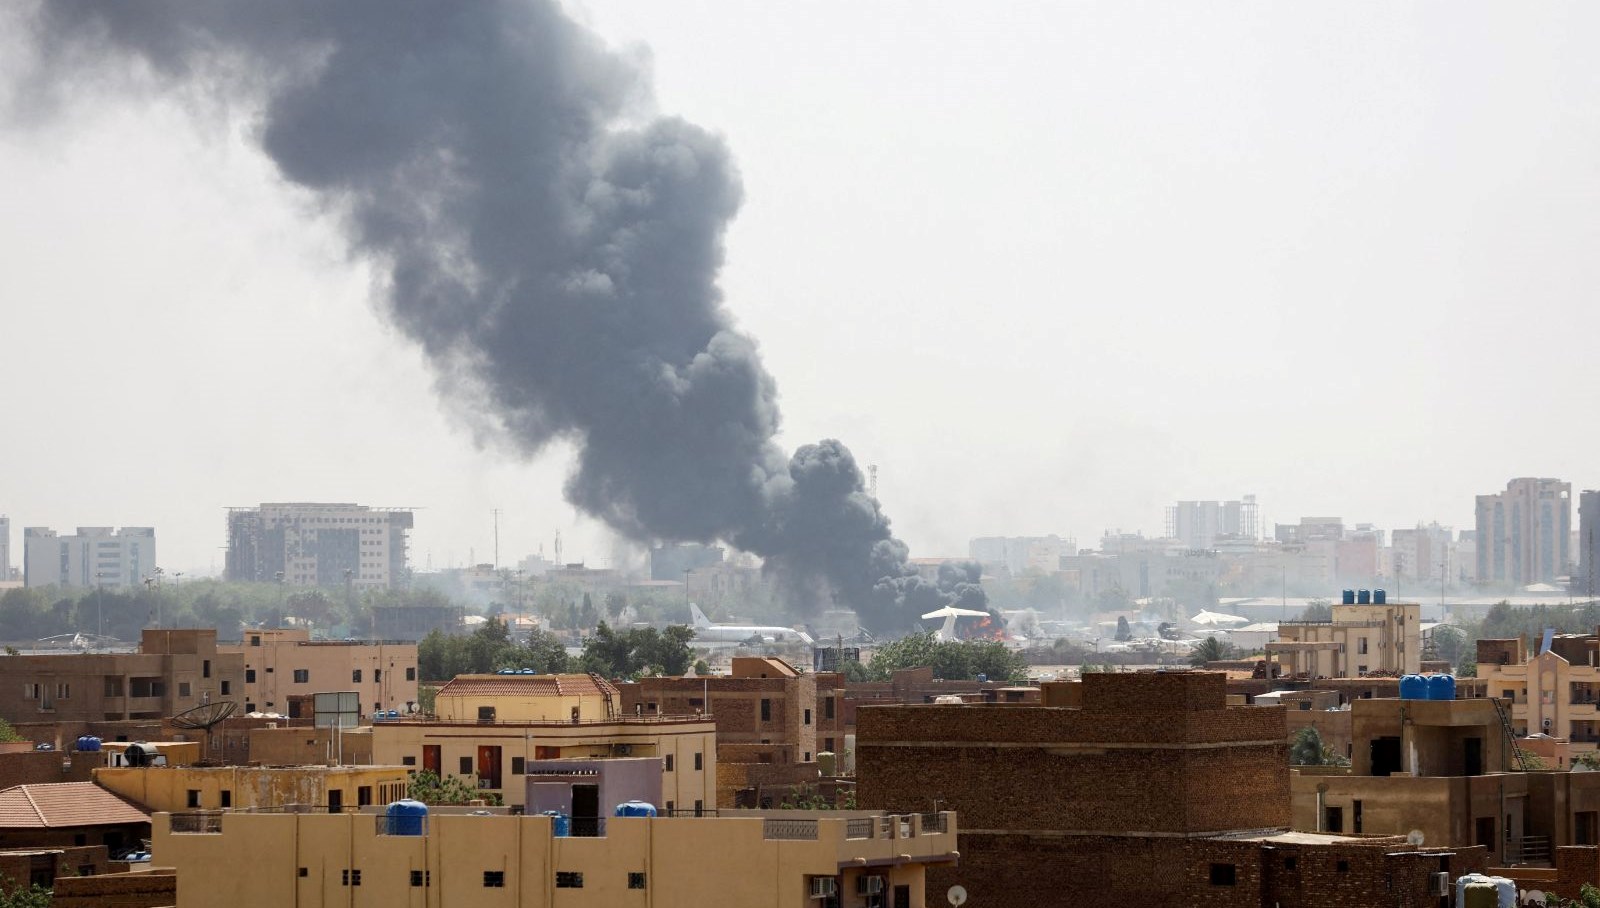 Sudan’da Ordu ve HDK 72 saatlik yeni ateşkes ilan etti